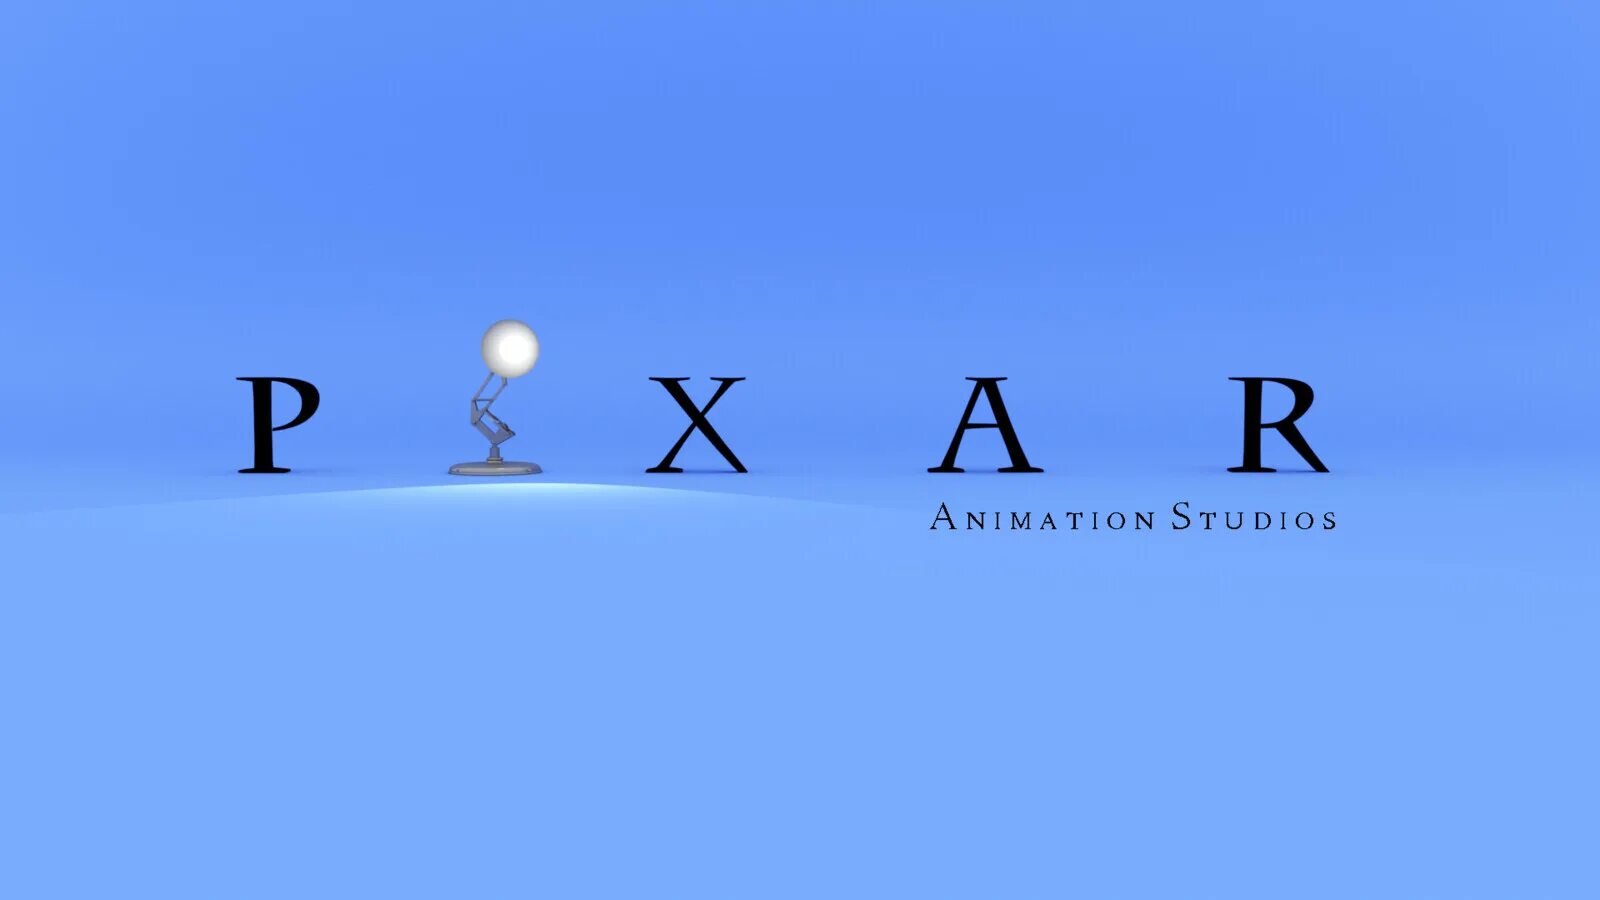 Pixar logo. Pixar логотип. Знак Пиксар. Анимационная студия Pixar. Символы компании Пиксар.